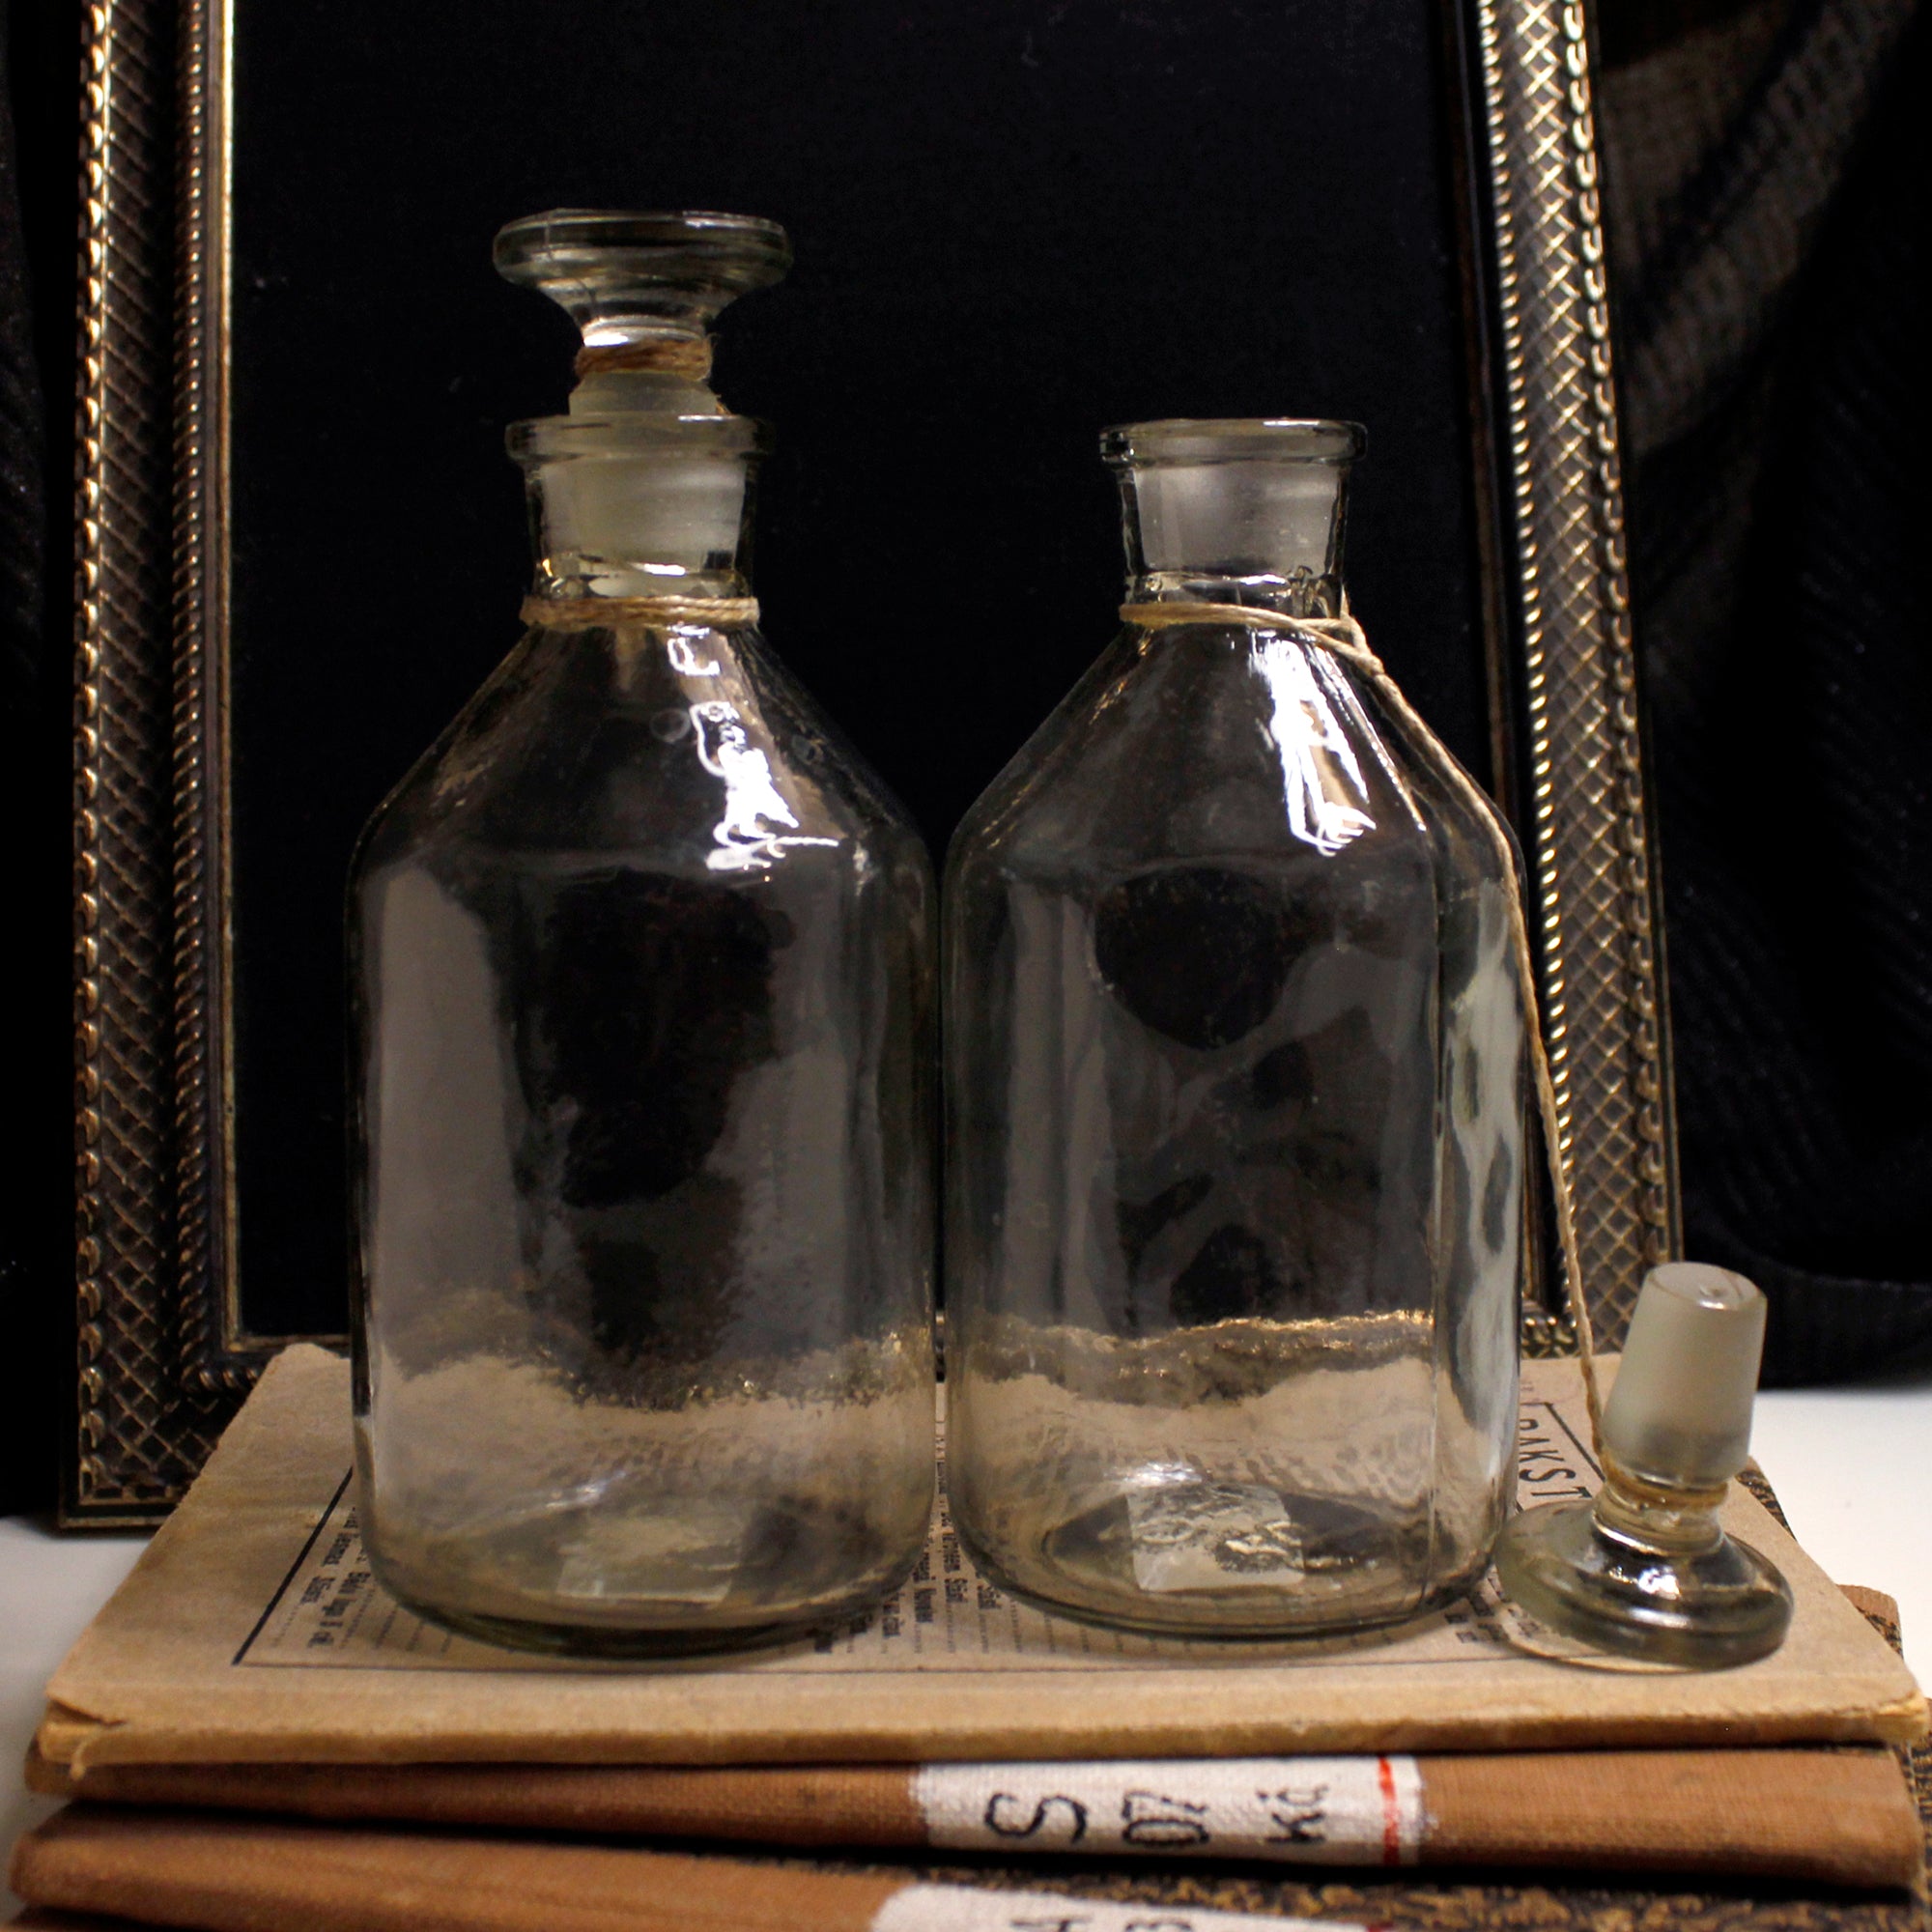 Vintage Glass Bottle